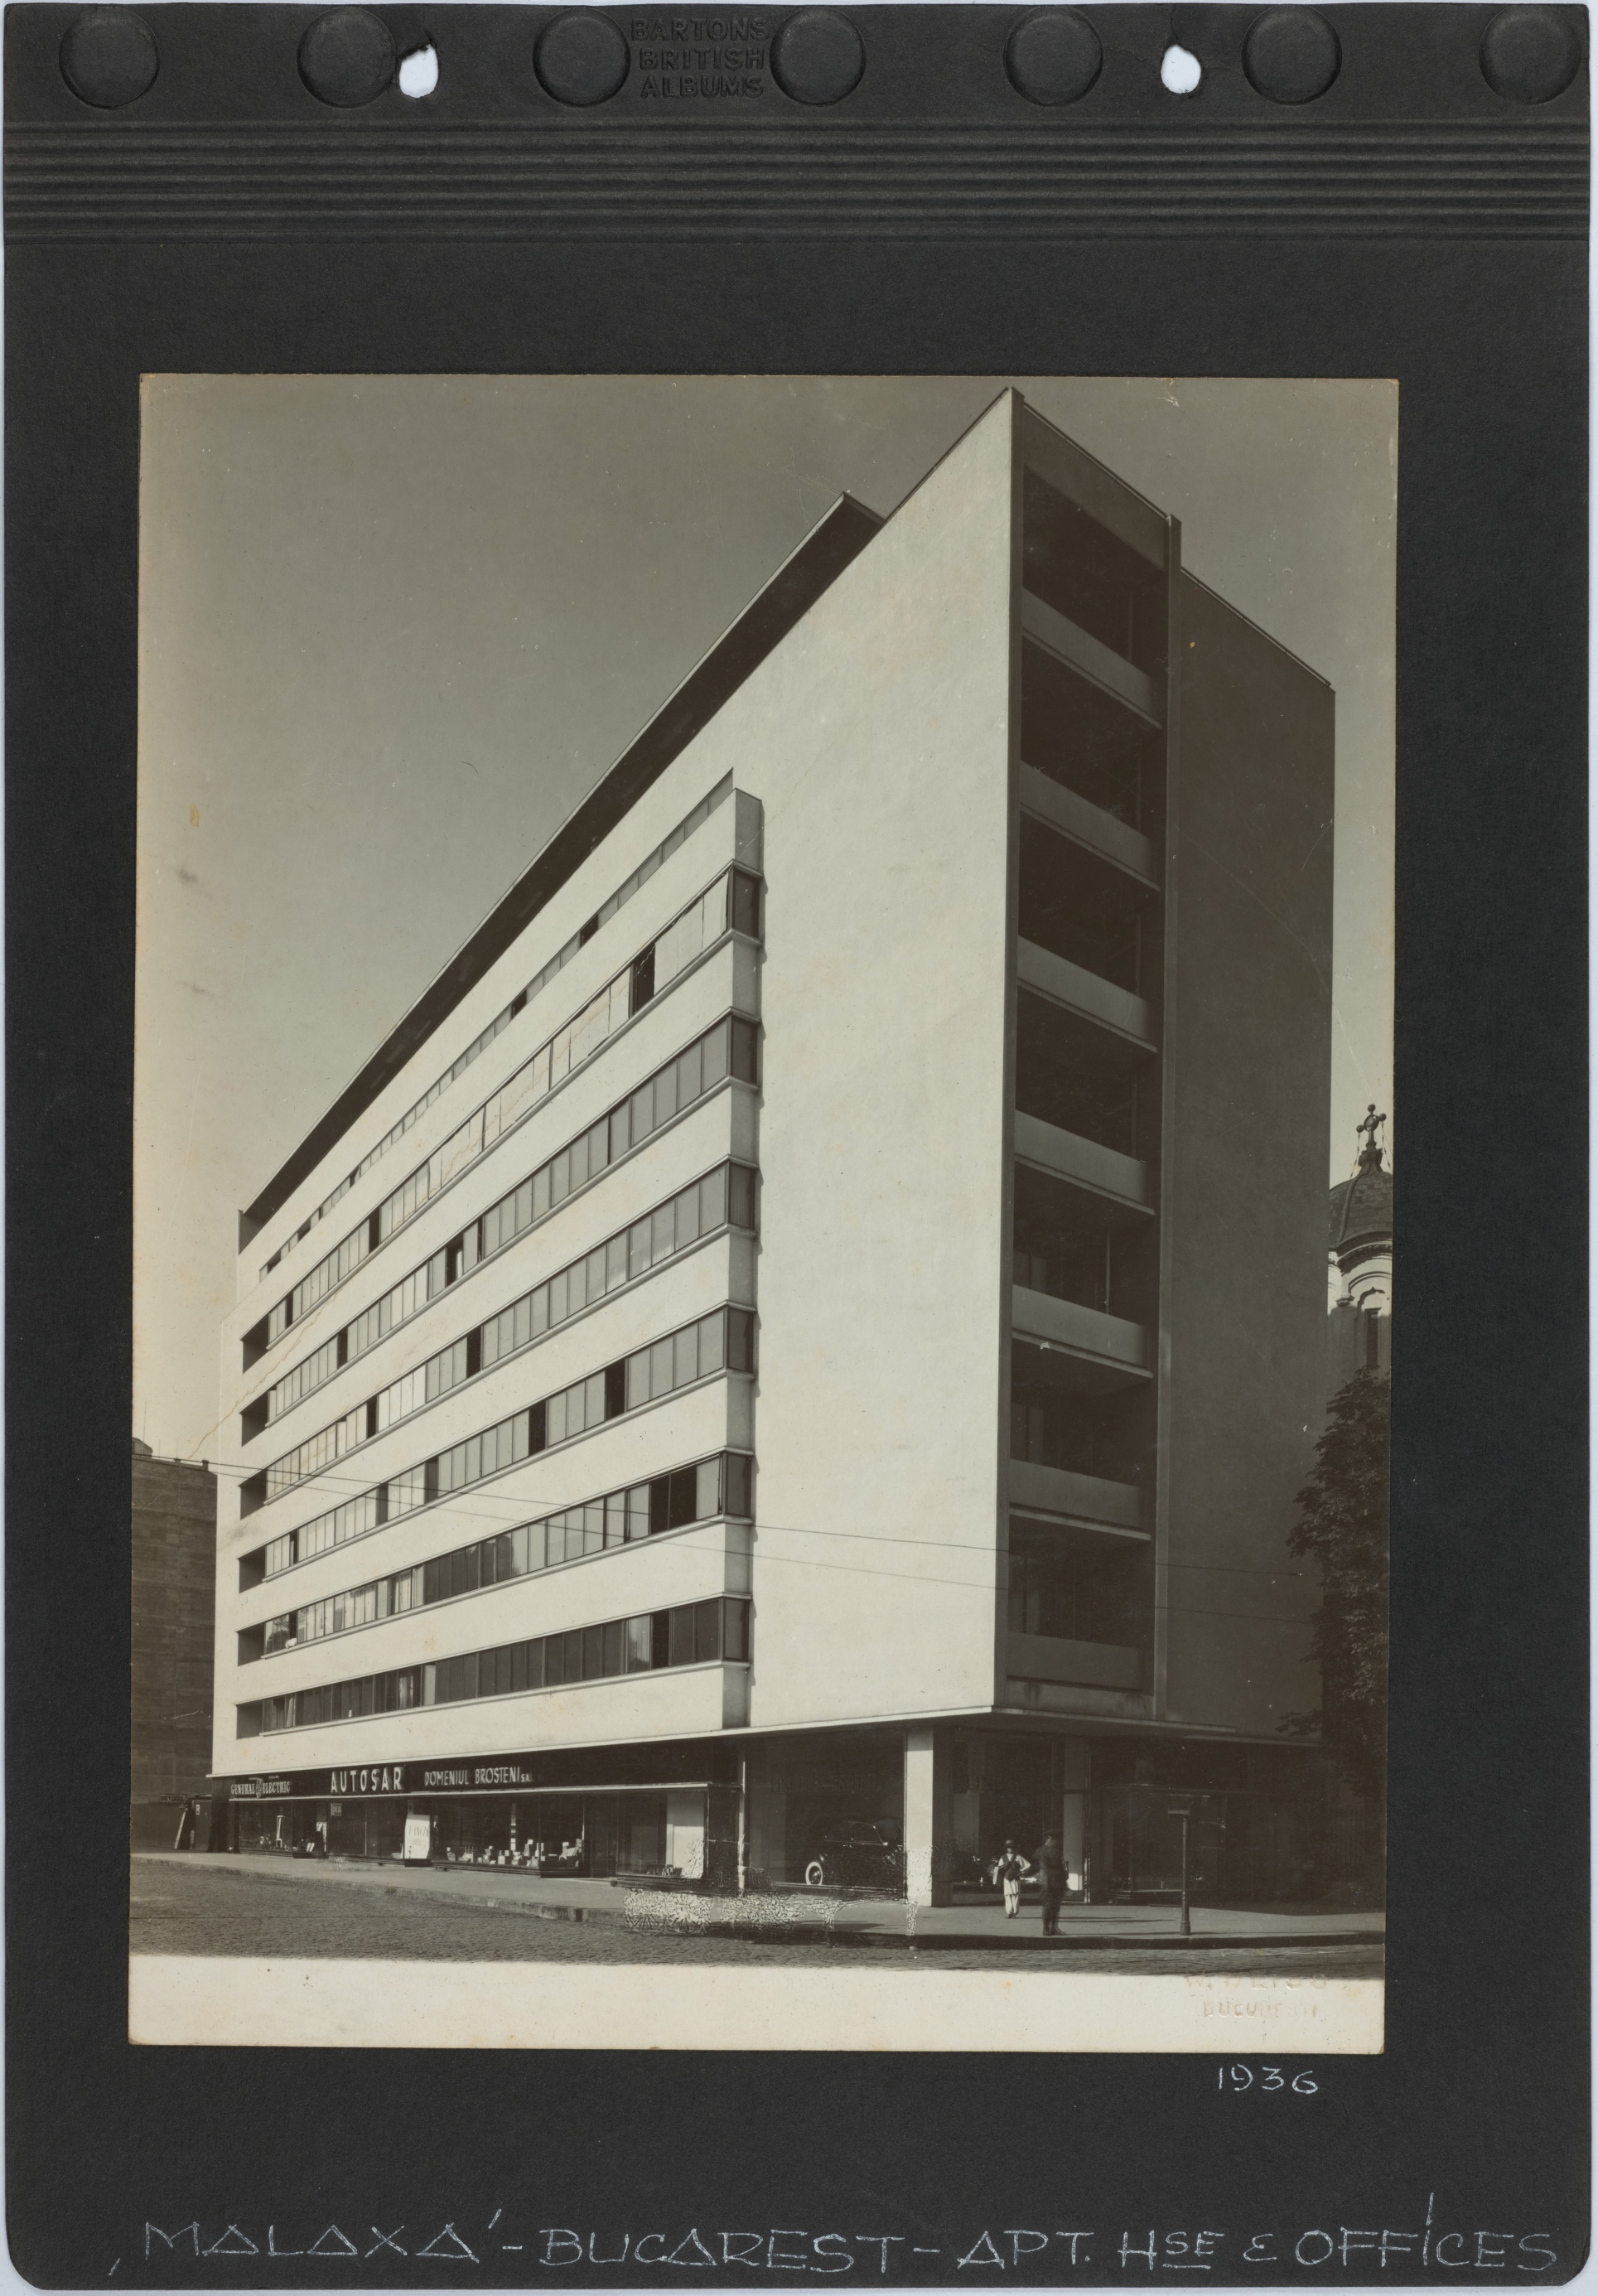 'Malaxa' - Bucarest - Apt. Hse & offices 1936. W. Weiss (photograph)